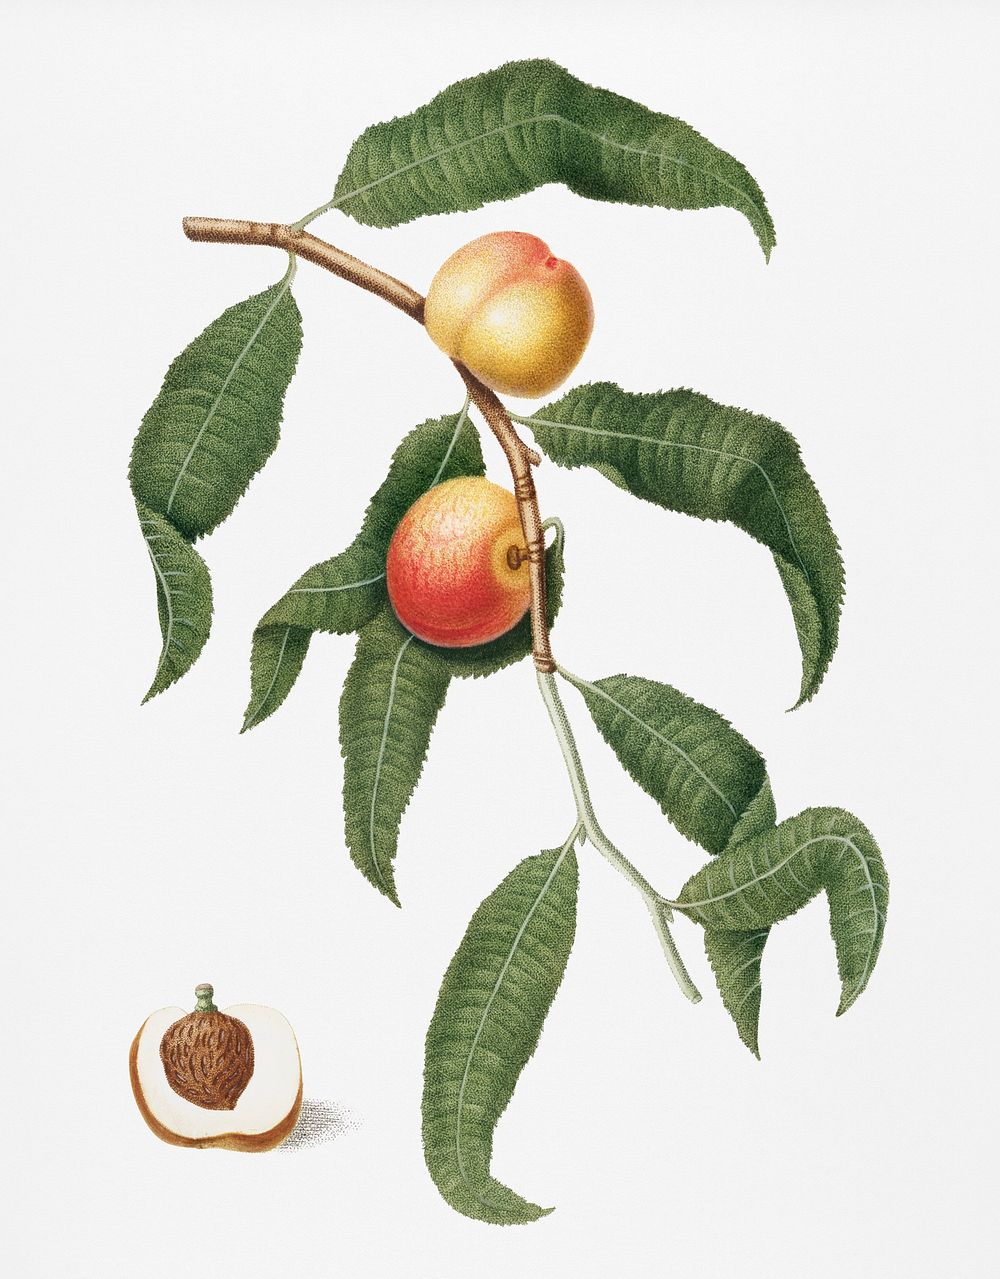 Peach (Persica Alberges) from Pomona Italiana (1817 - 1839) by Giorgio Gallesio (1772-1839). Original from New York public…